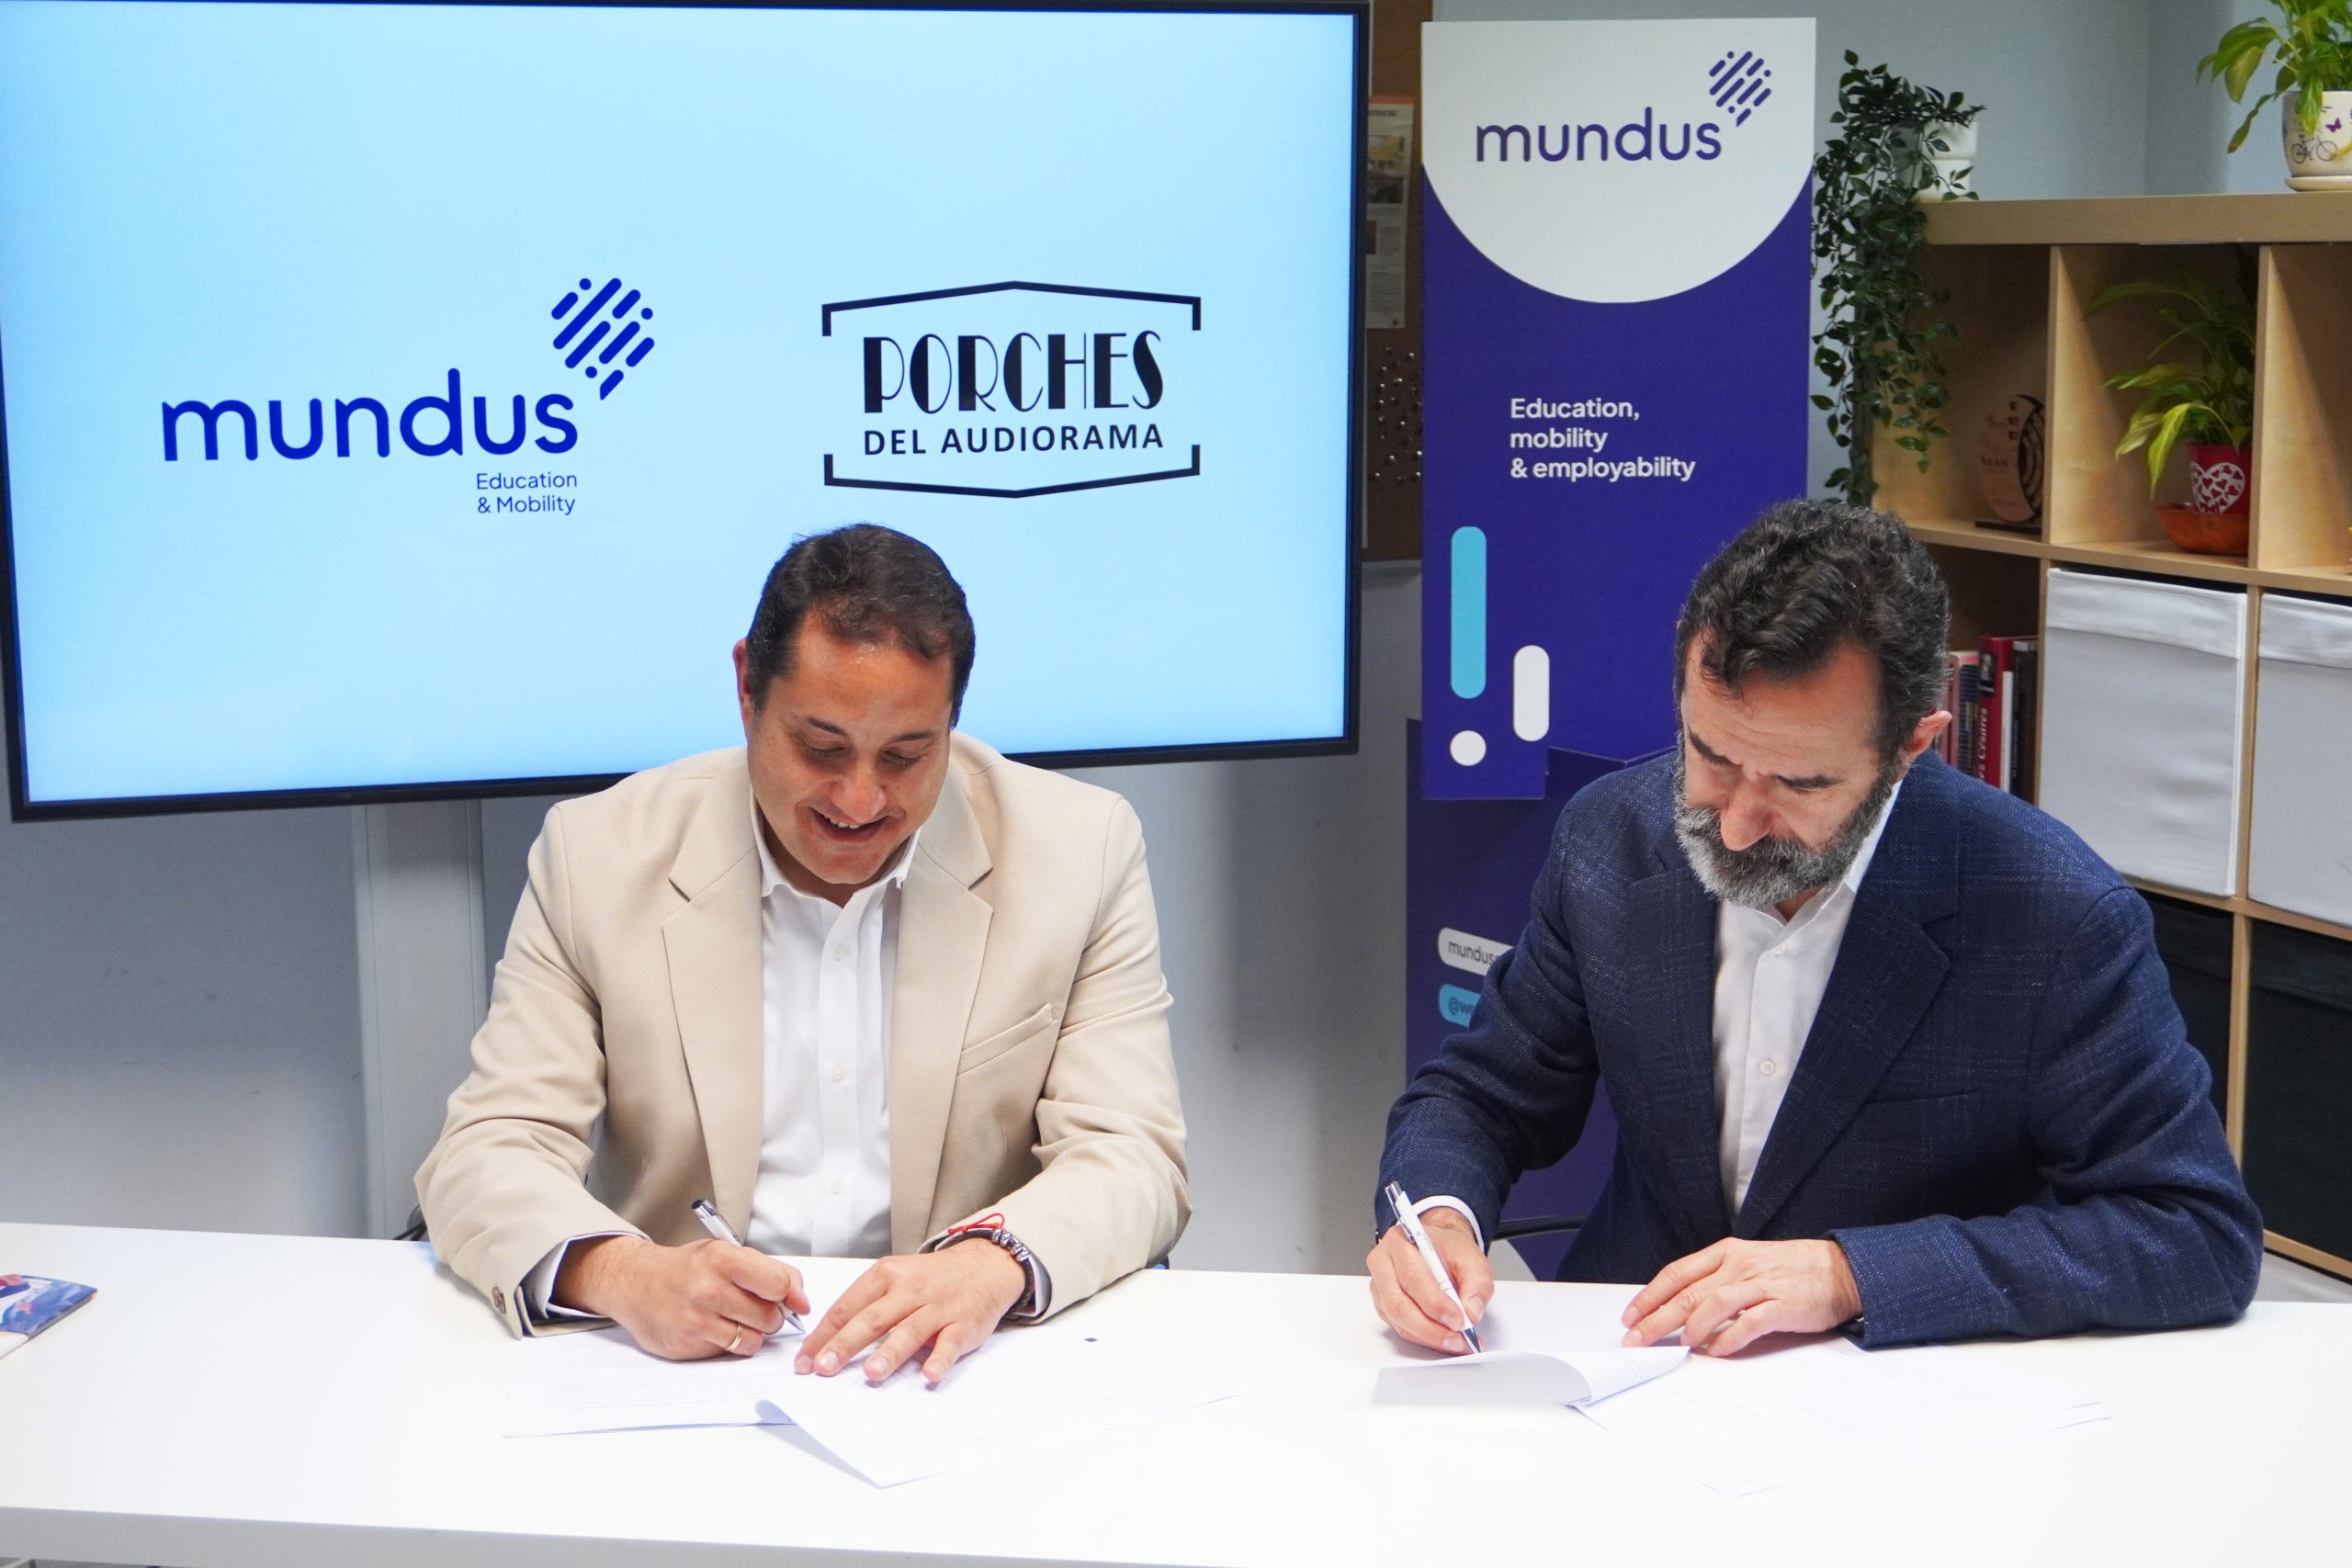 Los Porches del Audiorama refuerza su compromiso con los jóvenes con un nuevo acuerdo con la organización Mundus